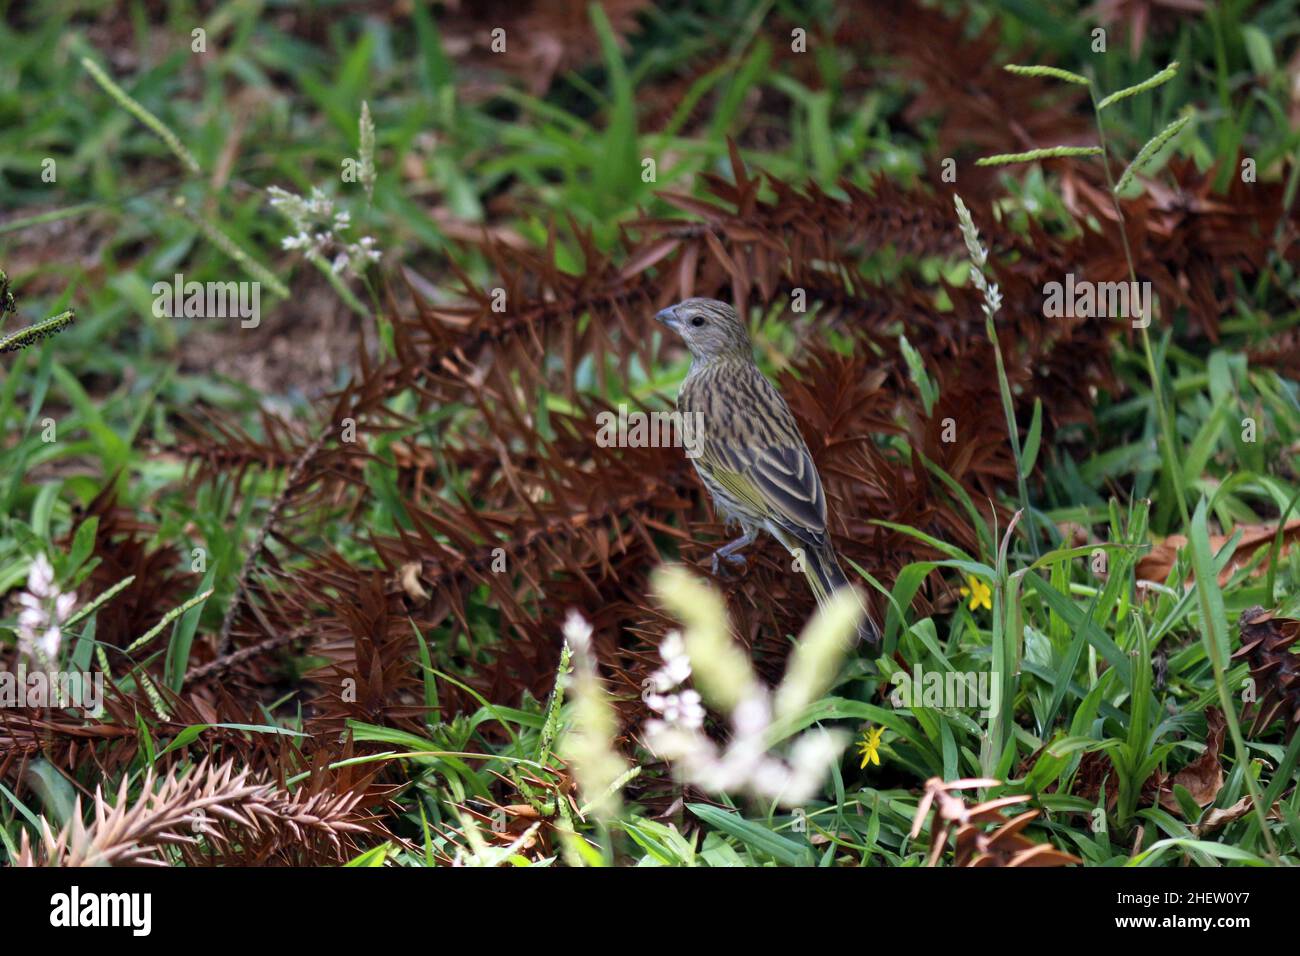 Der kleine Stadtvogel wandert durch die Vegetation des Waldes. Das grüne Gras und die trockenen Dornen der Araukarie. Stockfoto